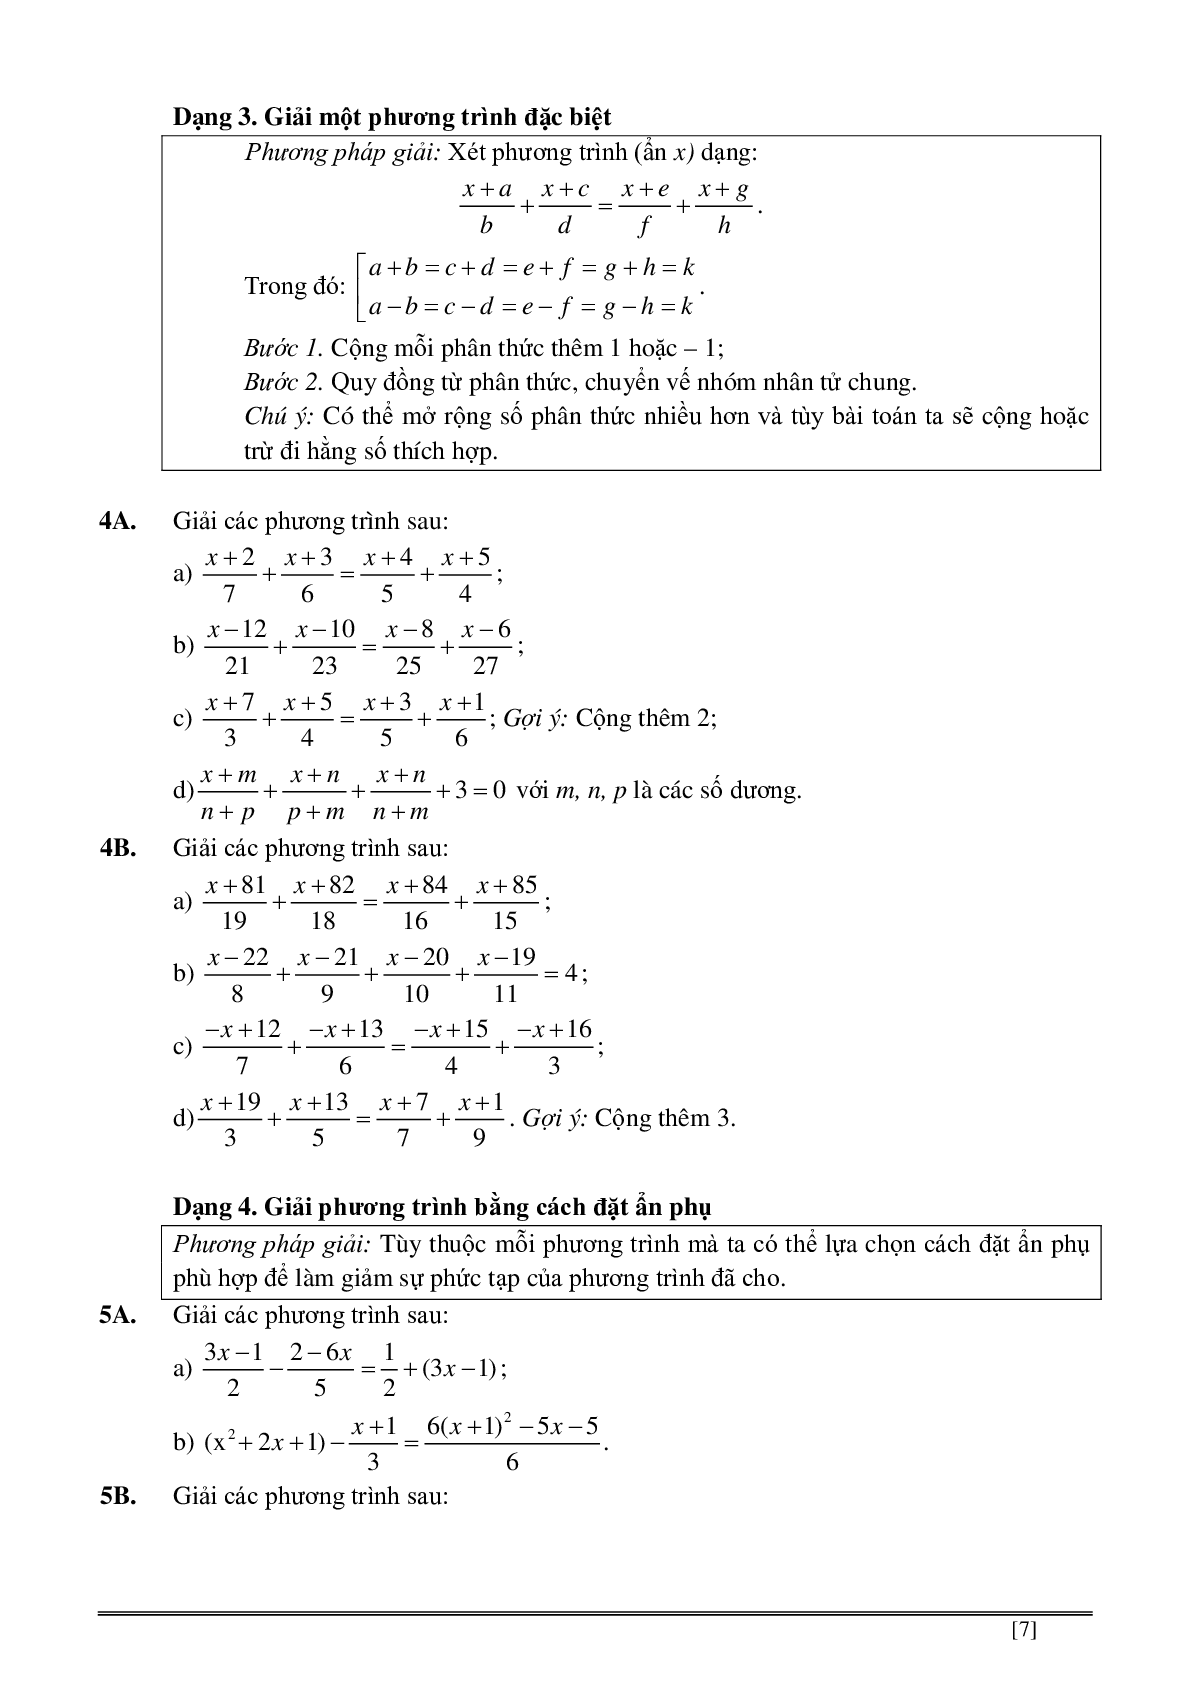 Củng cố và ôn luyện toán 8 kì 2 trang 139-186 (trang 7)